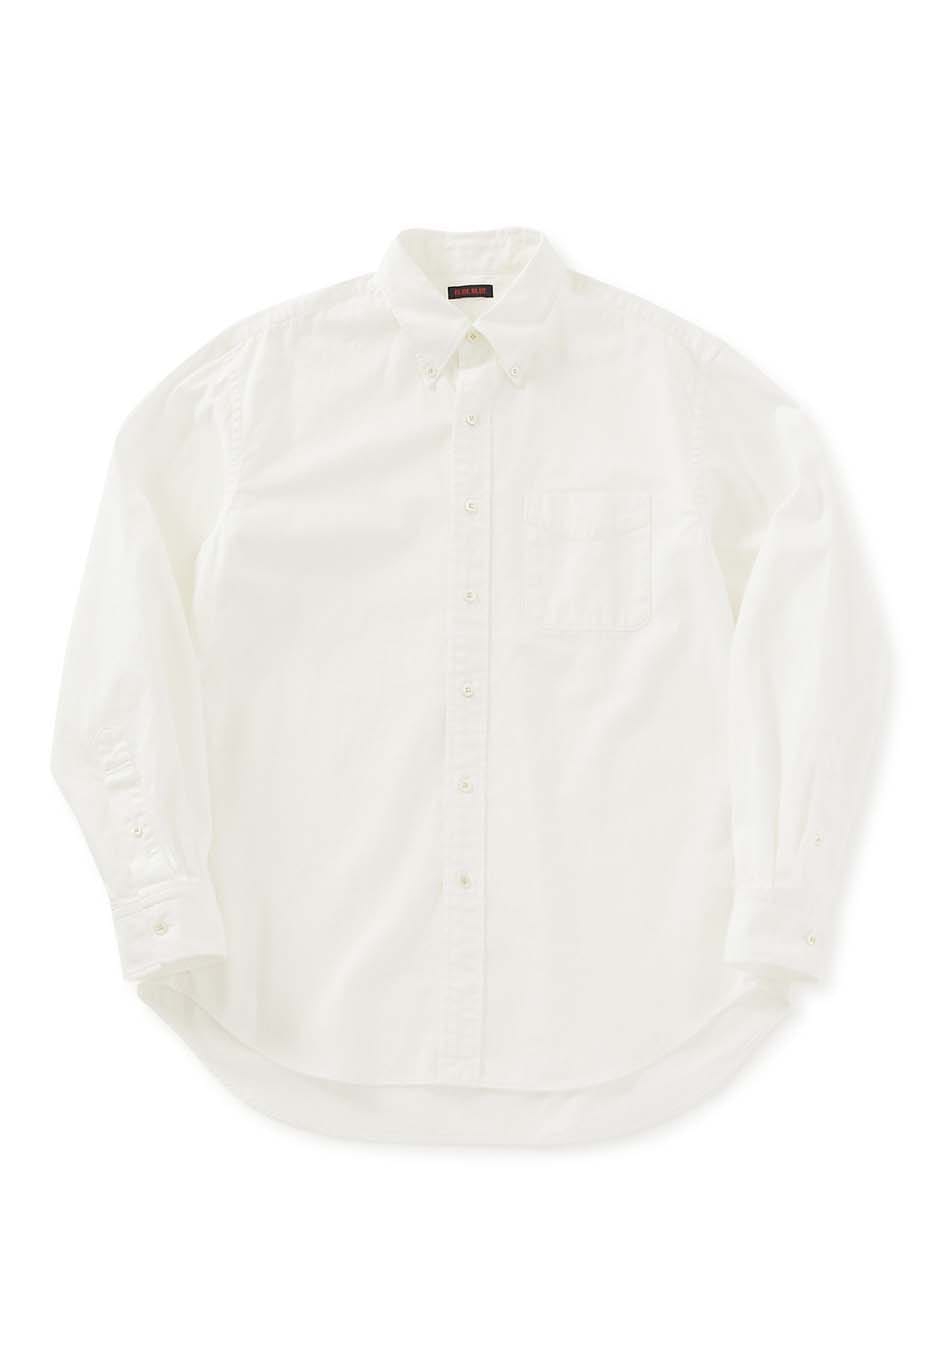 Light denim button-down long-sleeved shirt